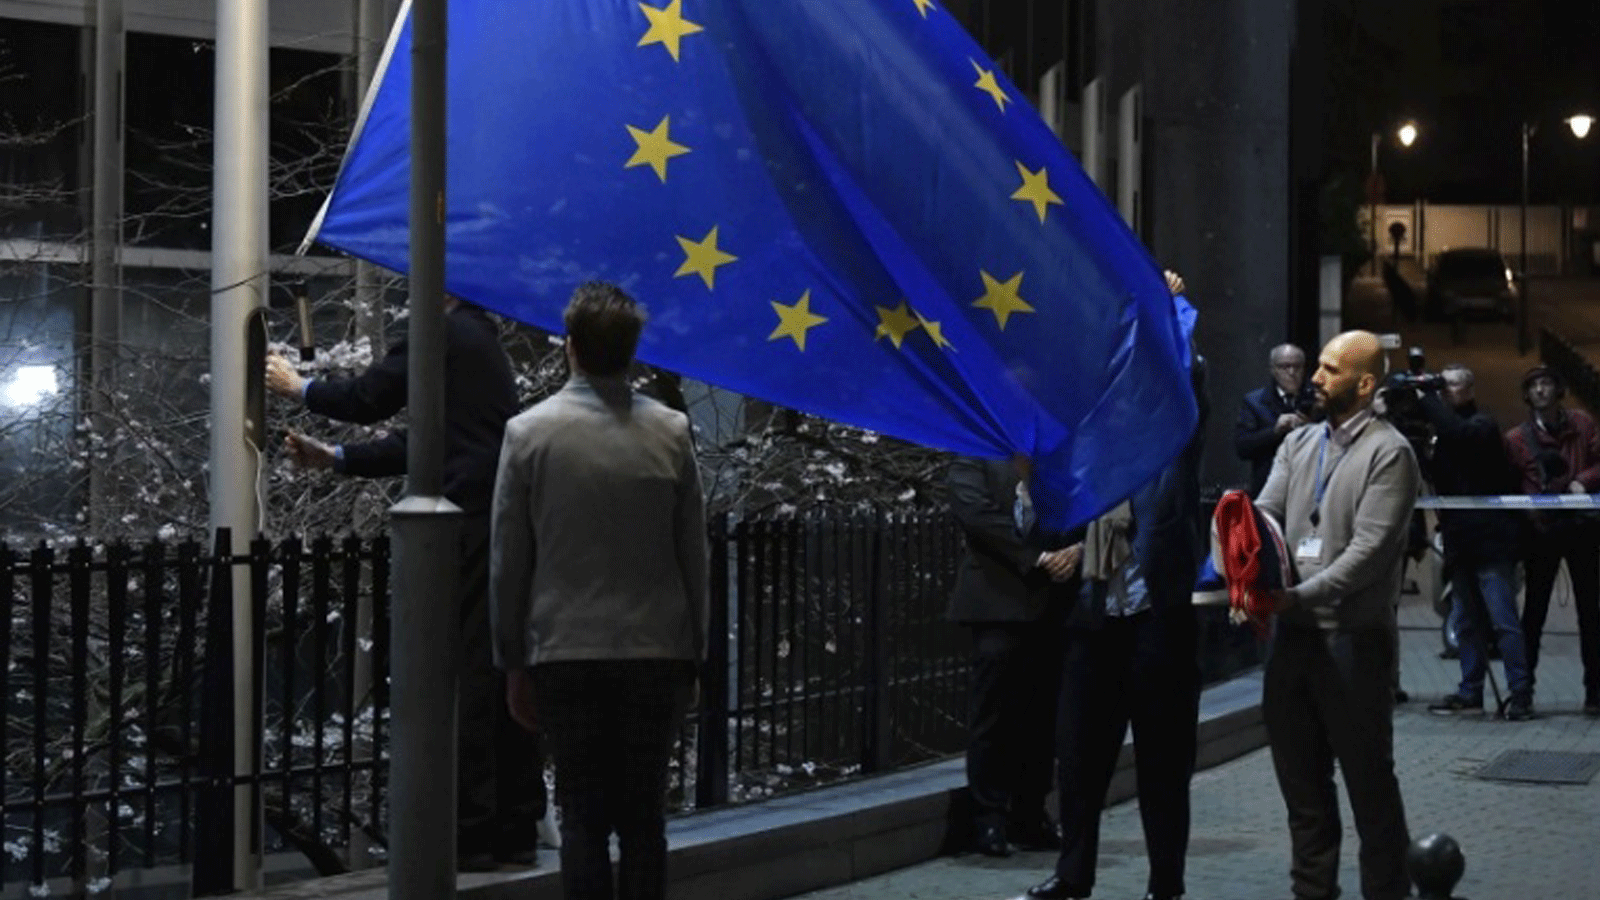 موظف يحمل علم المملكة المتحدة مطويًا بعد إزالته من مبنى البرلمان الأوروبي في بروكسل في يوم خروج بريطانيا من الاتحاد الأوروبي. 31 كانون الثاني/يناير 2020